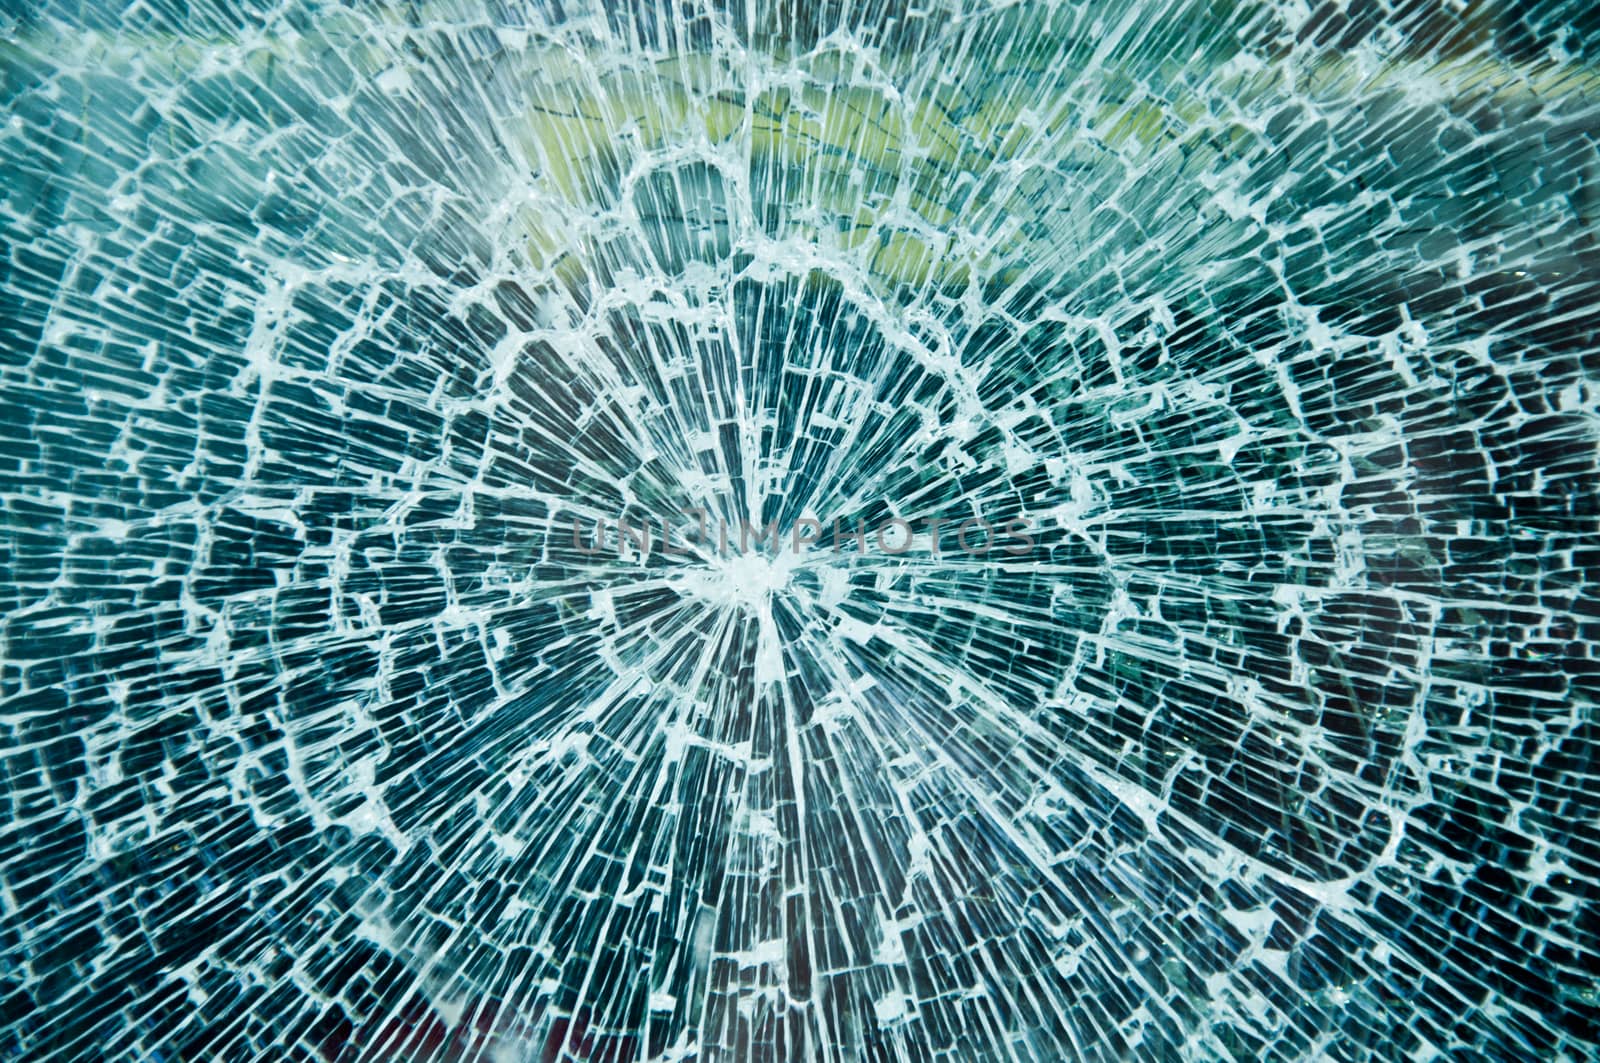 Broken Glass texture by NeydtStock